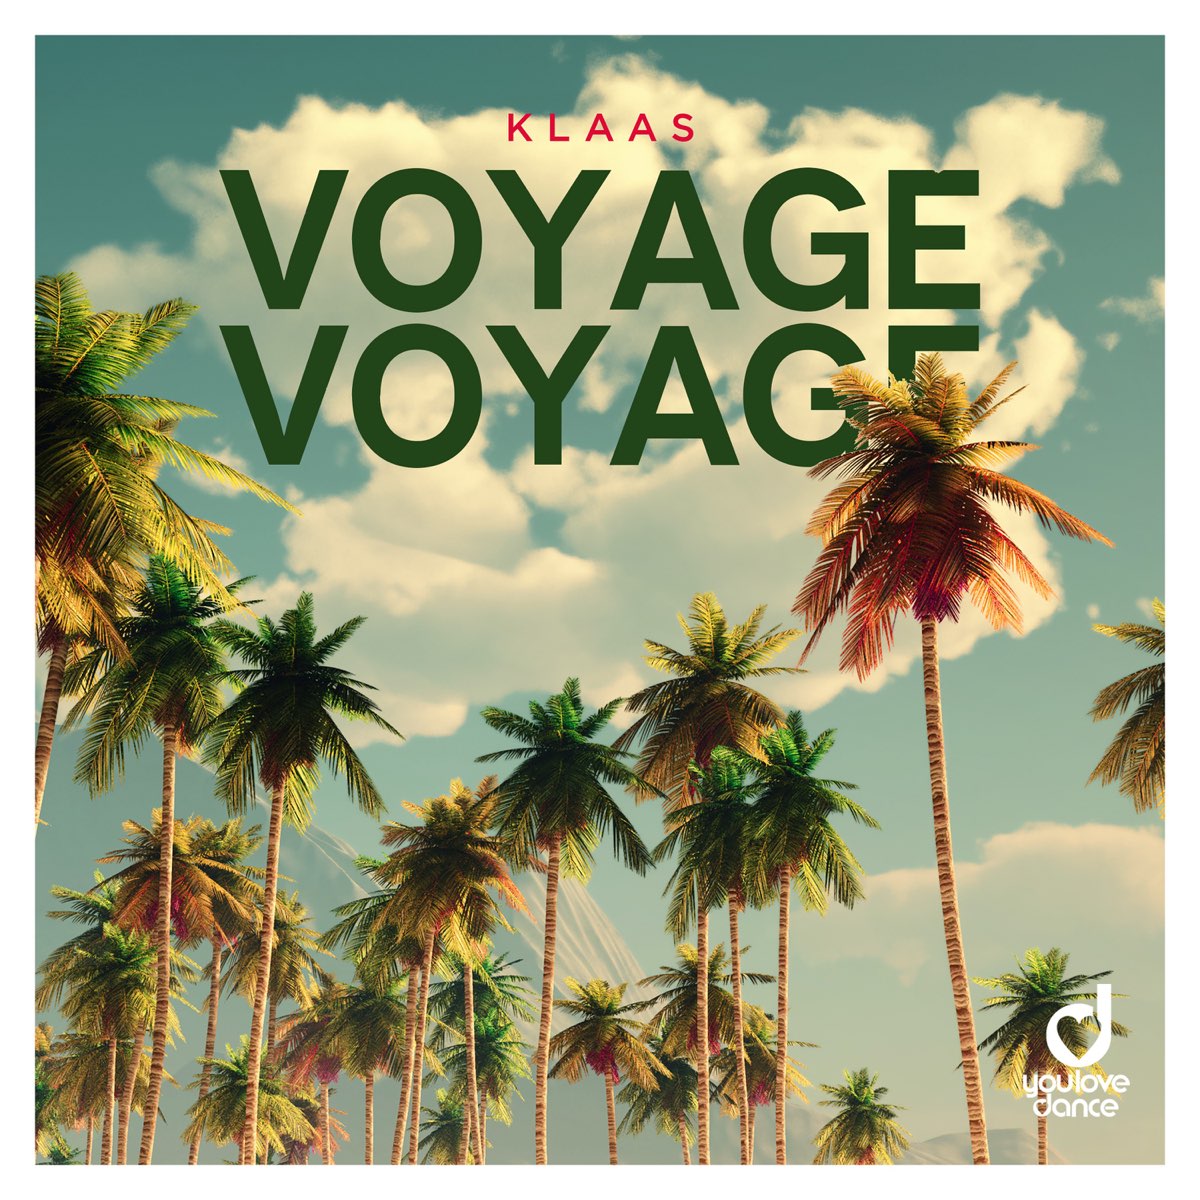 download musica voyage voyage